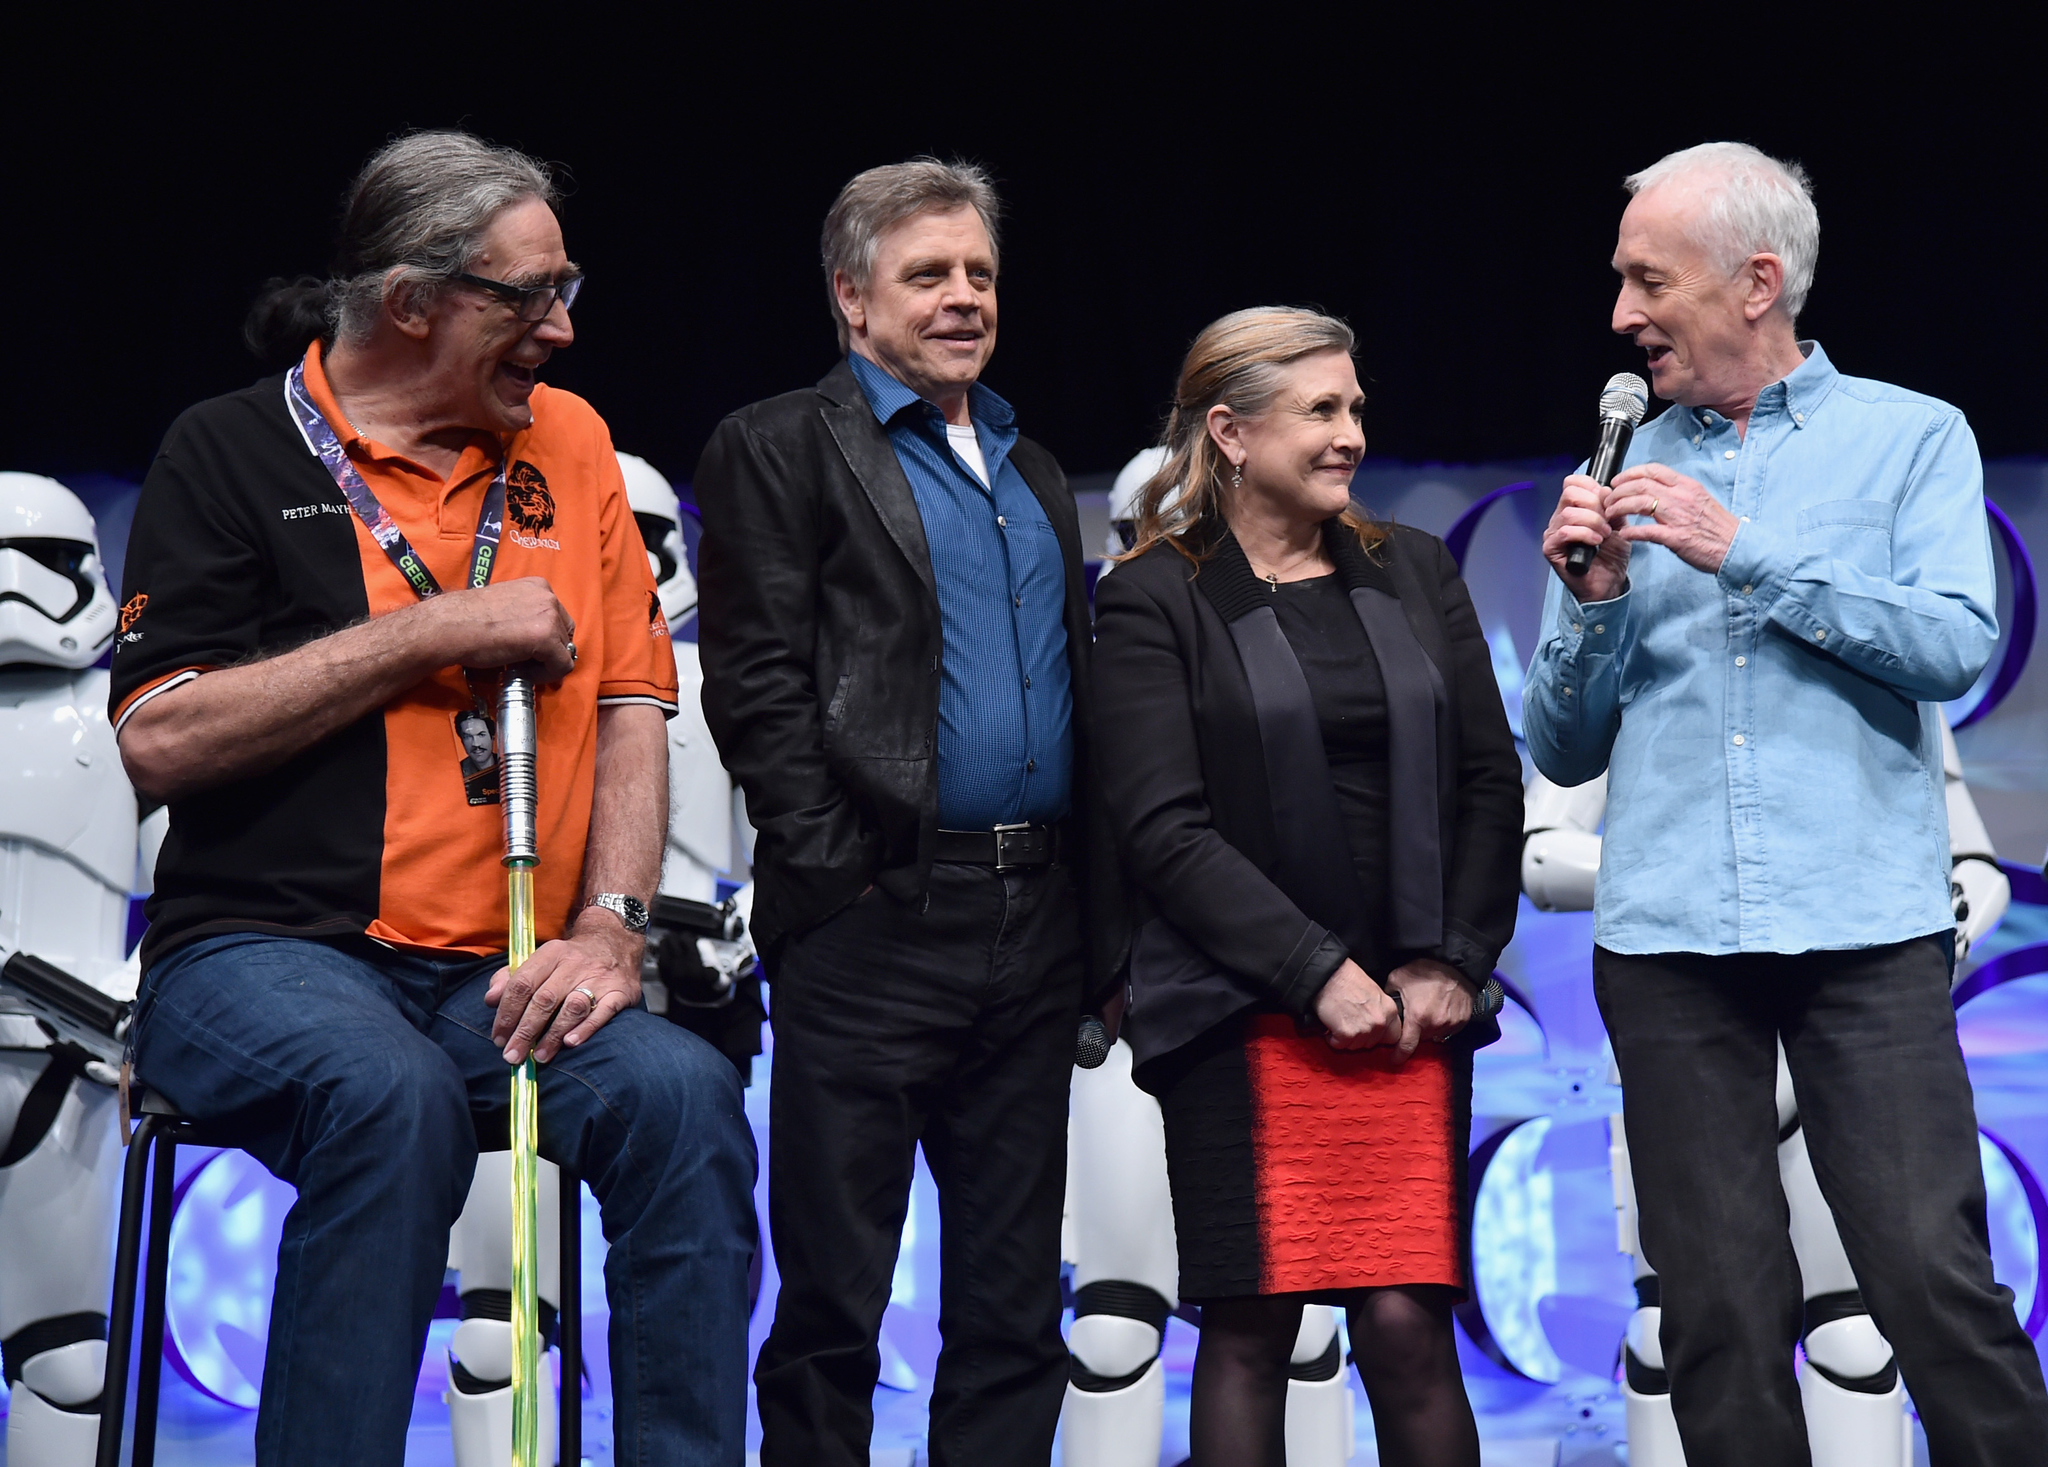 Anthony Daniels, Carrie Fisher, Mark Hamill and Peter Mayhew at event of Zvaigzdziu karai: galia nubunda (2015)